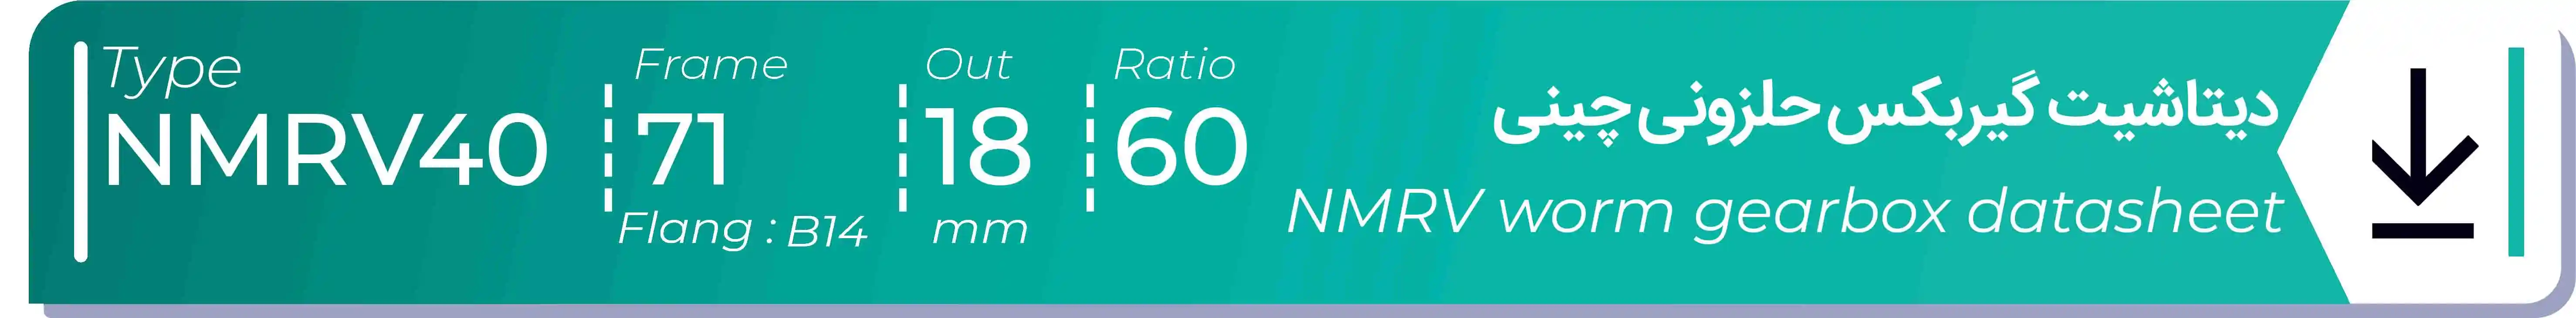  دیتاشیت و مشخصات فنی گیربکس حلزونی چینی   NMRV40  -  با خروجی 18- میلی متر و نسبت60 و فریم 71